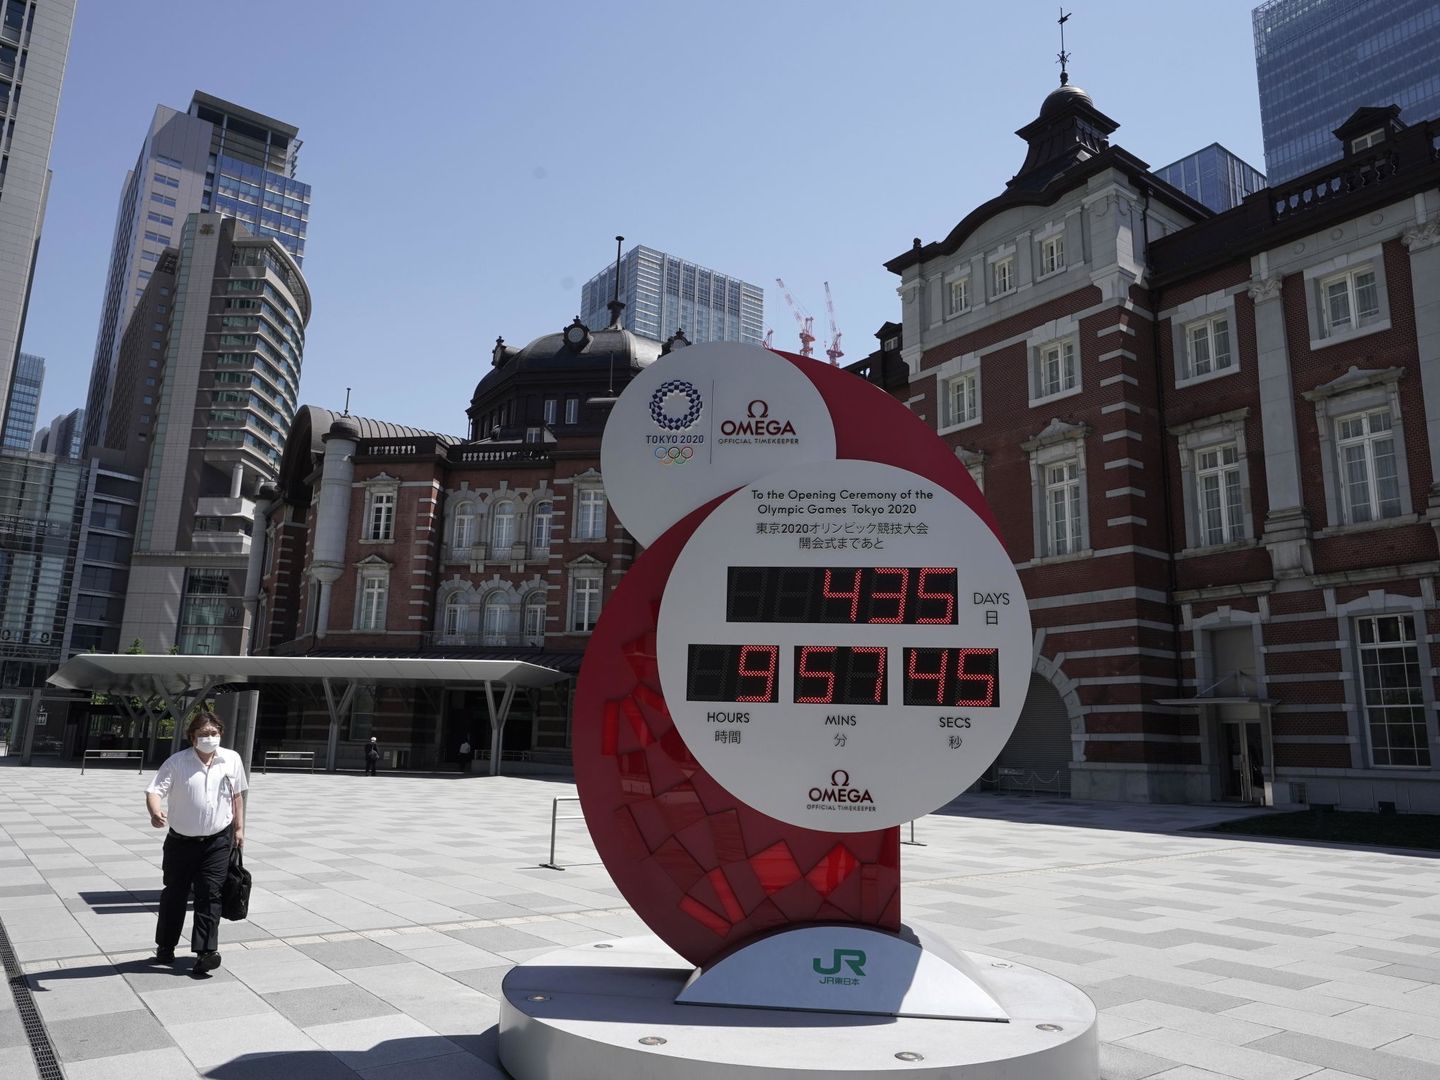 Un reloj cuenta el tiempo restante hasta la inauguración de los Juegos (EFE EPA/Kimimasa Mayama)